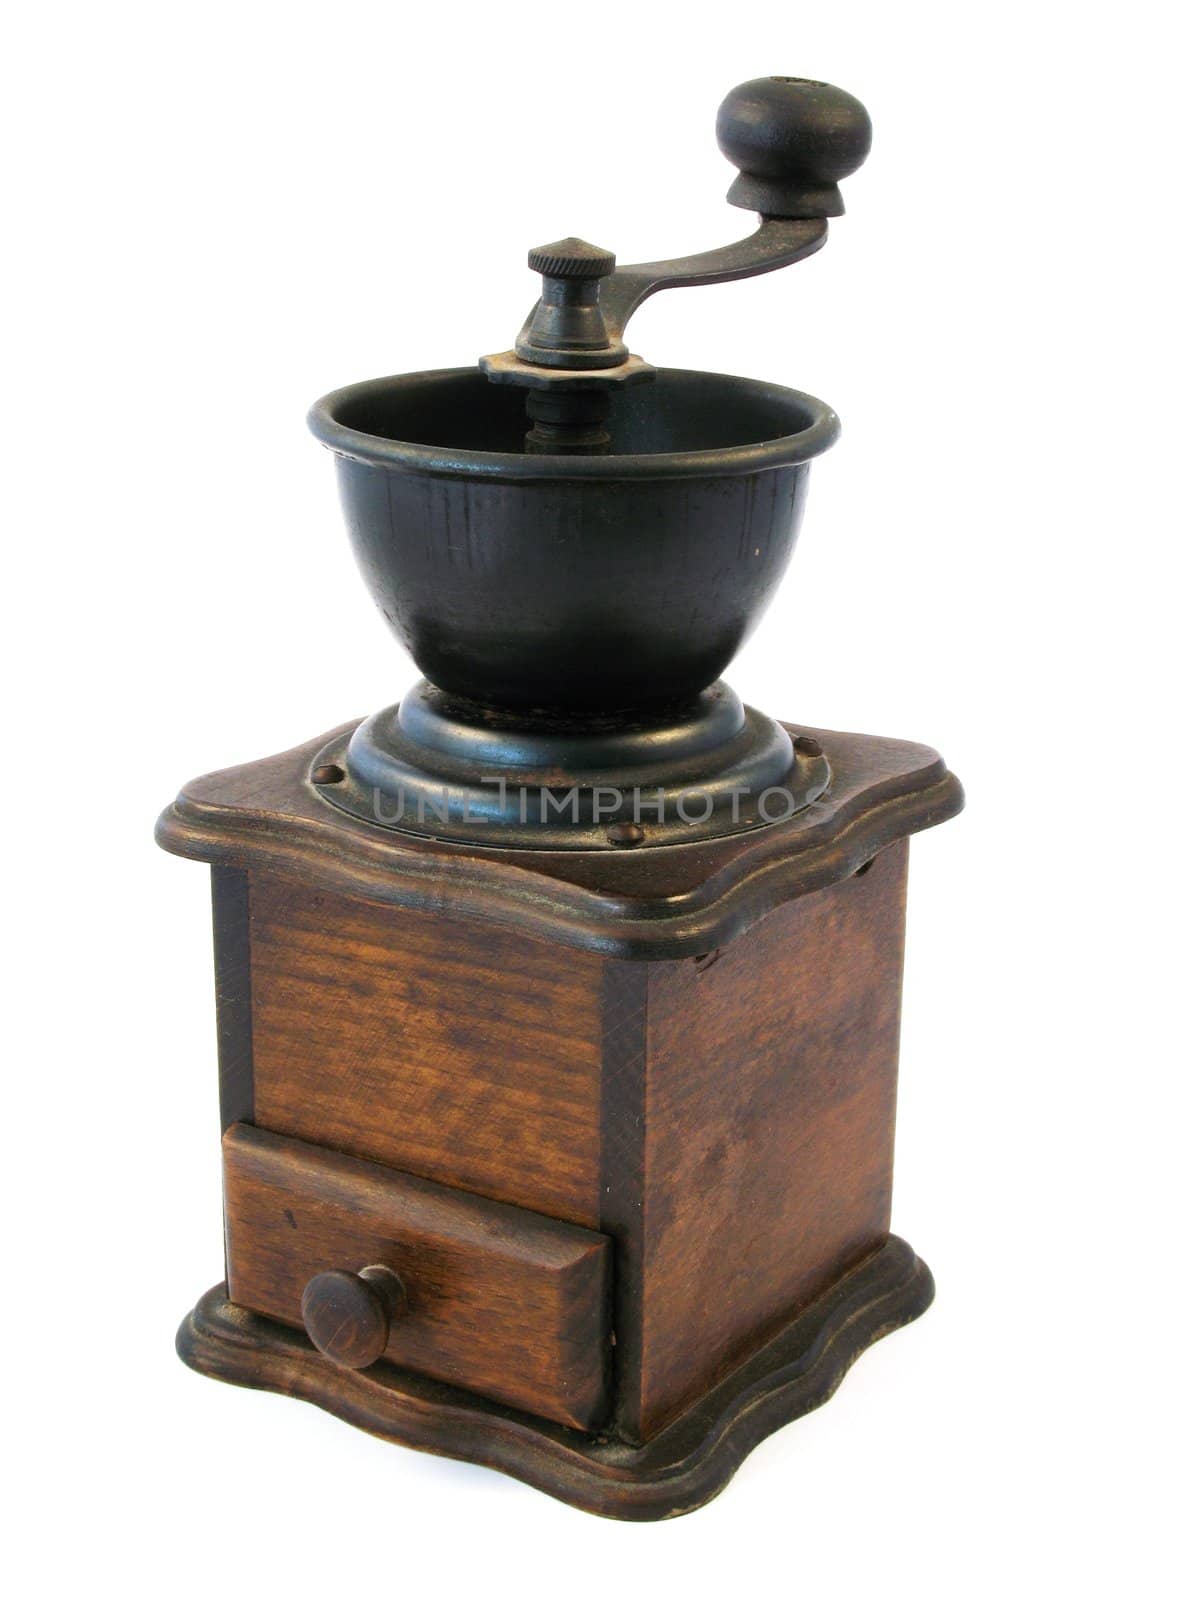 wooden coffee grinder by alexwhite